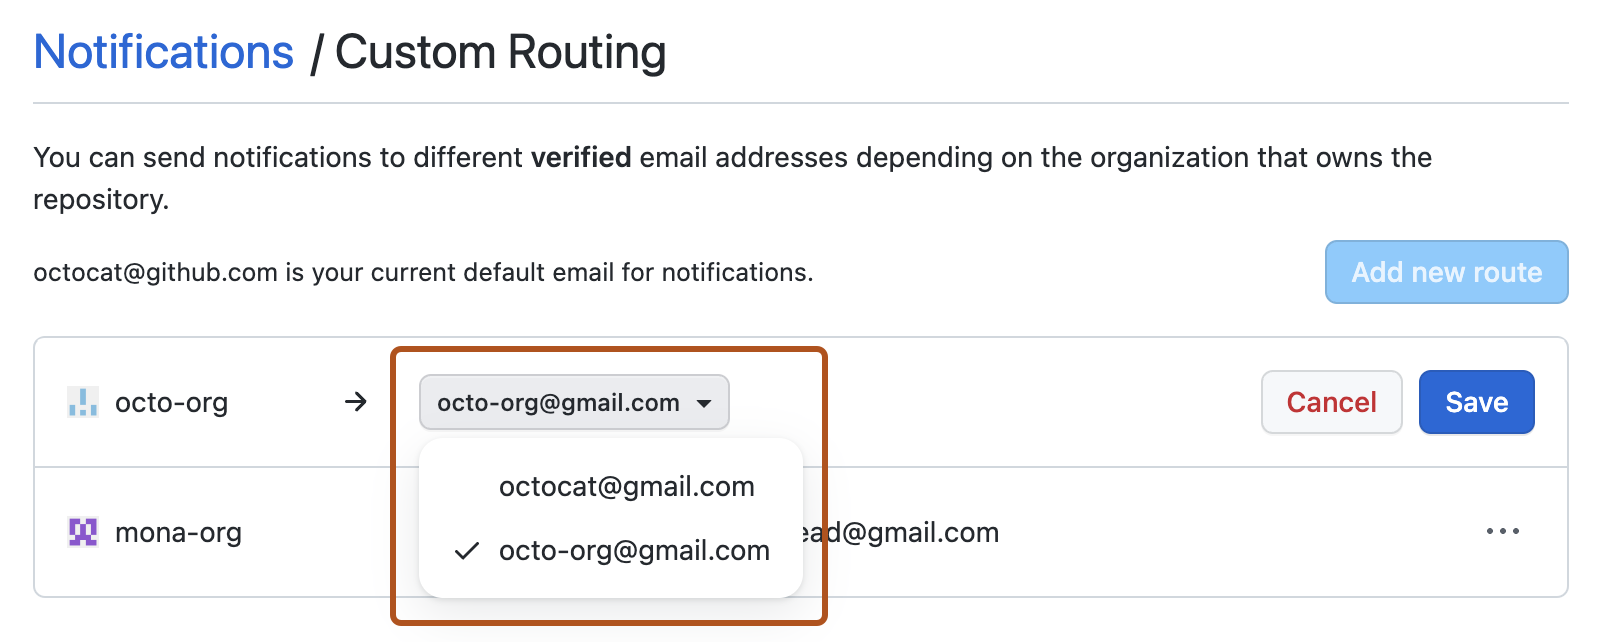 [カスタム ルーティング] ページのスクリーンショット。 ユーザーが使用可能なメール アドレスを示すドロップダウン メニューがオレンジ色の枠線で強調表示されています。